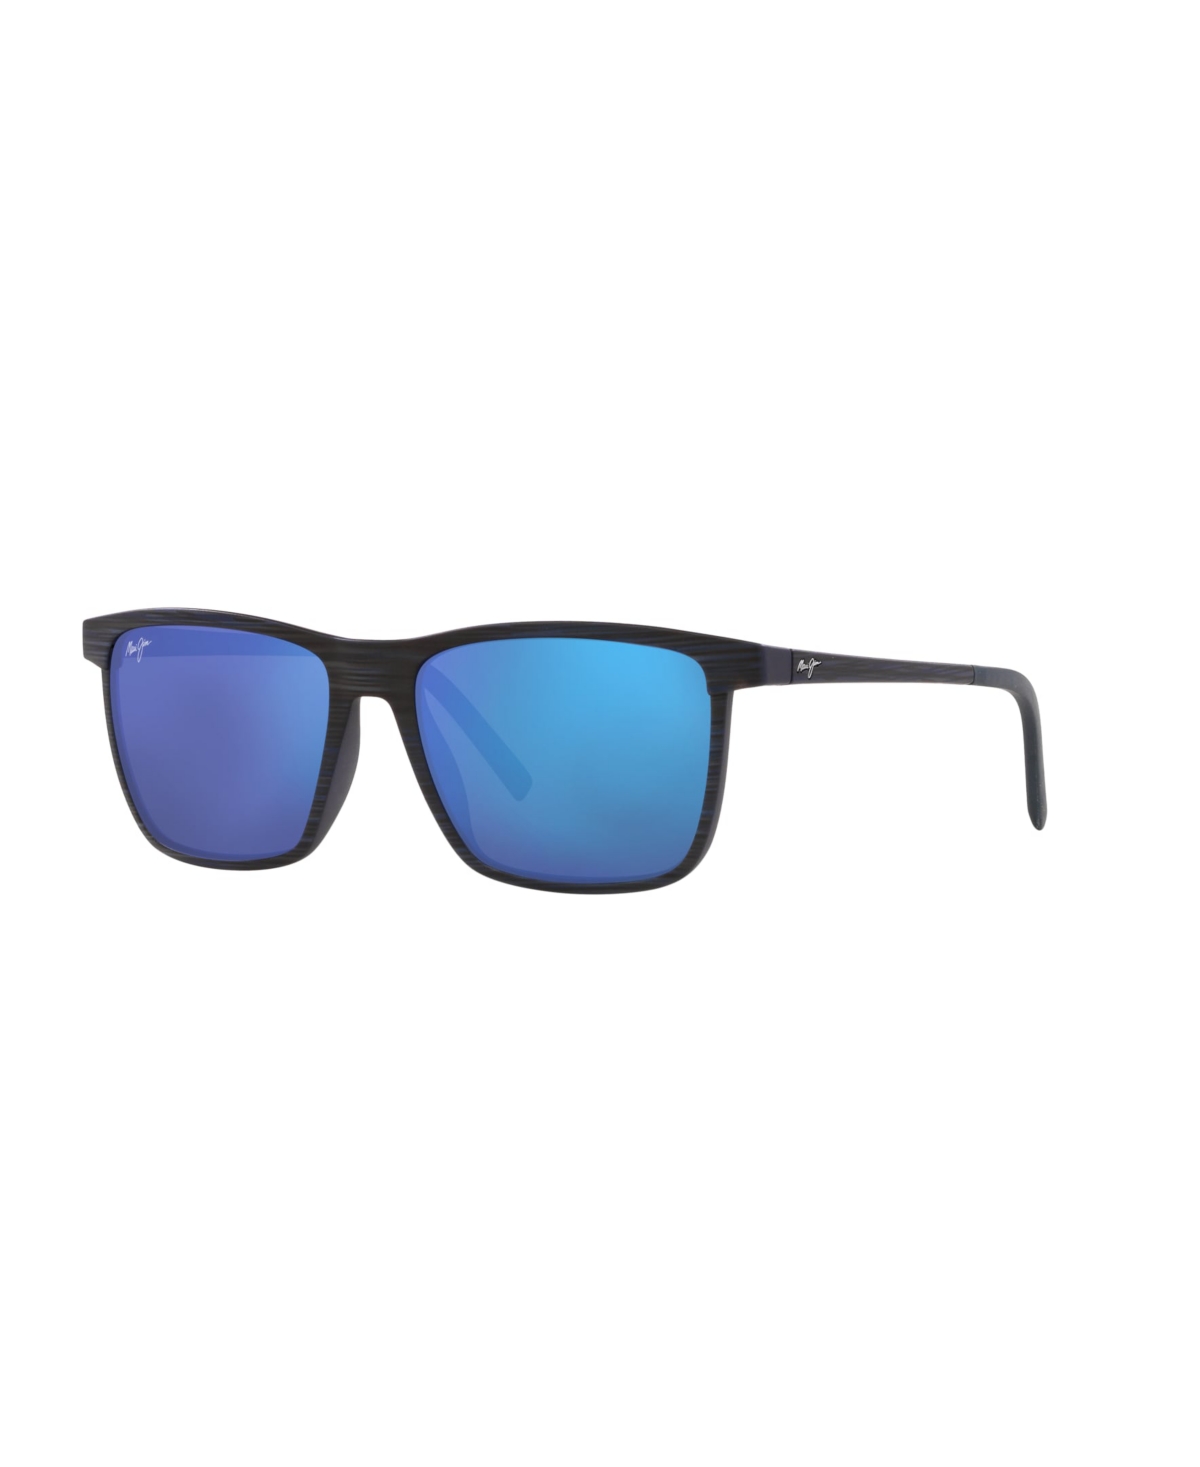 Unisex Polarized Sunglasses, One Way - Black Matte